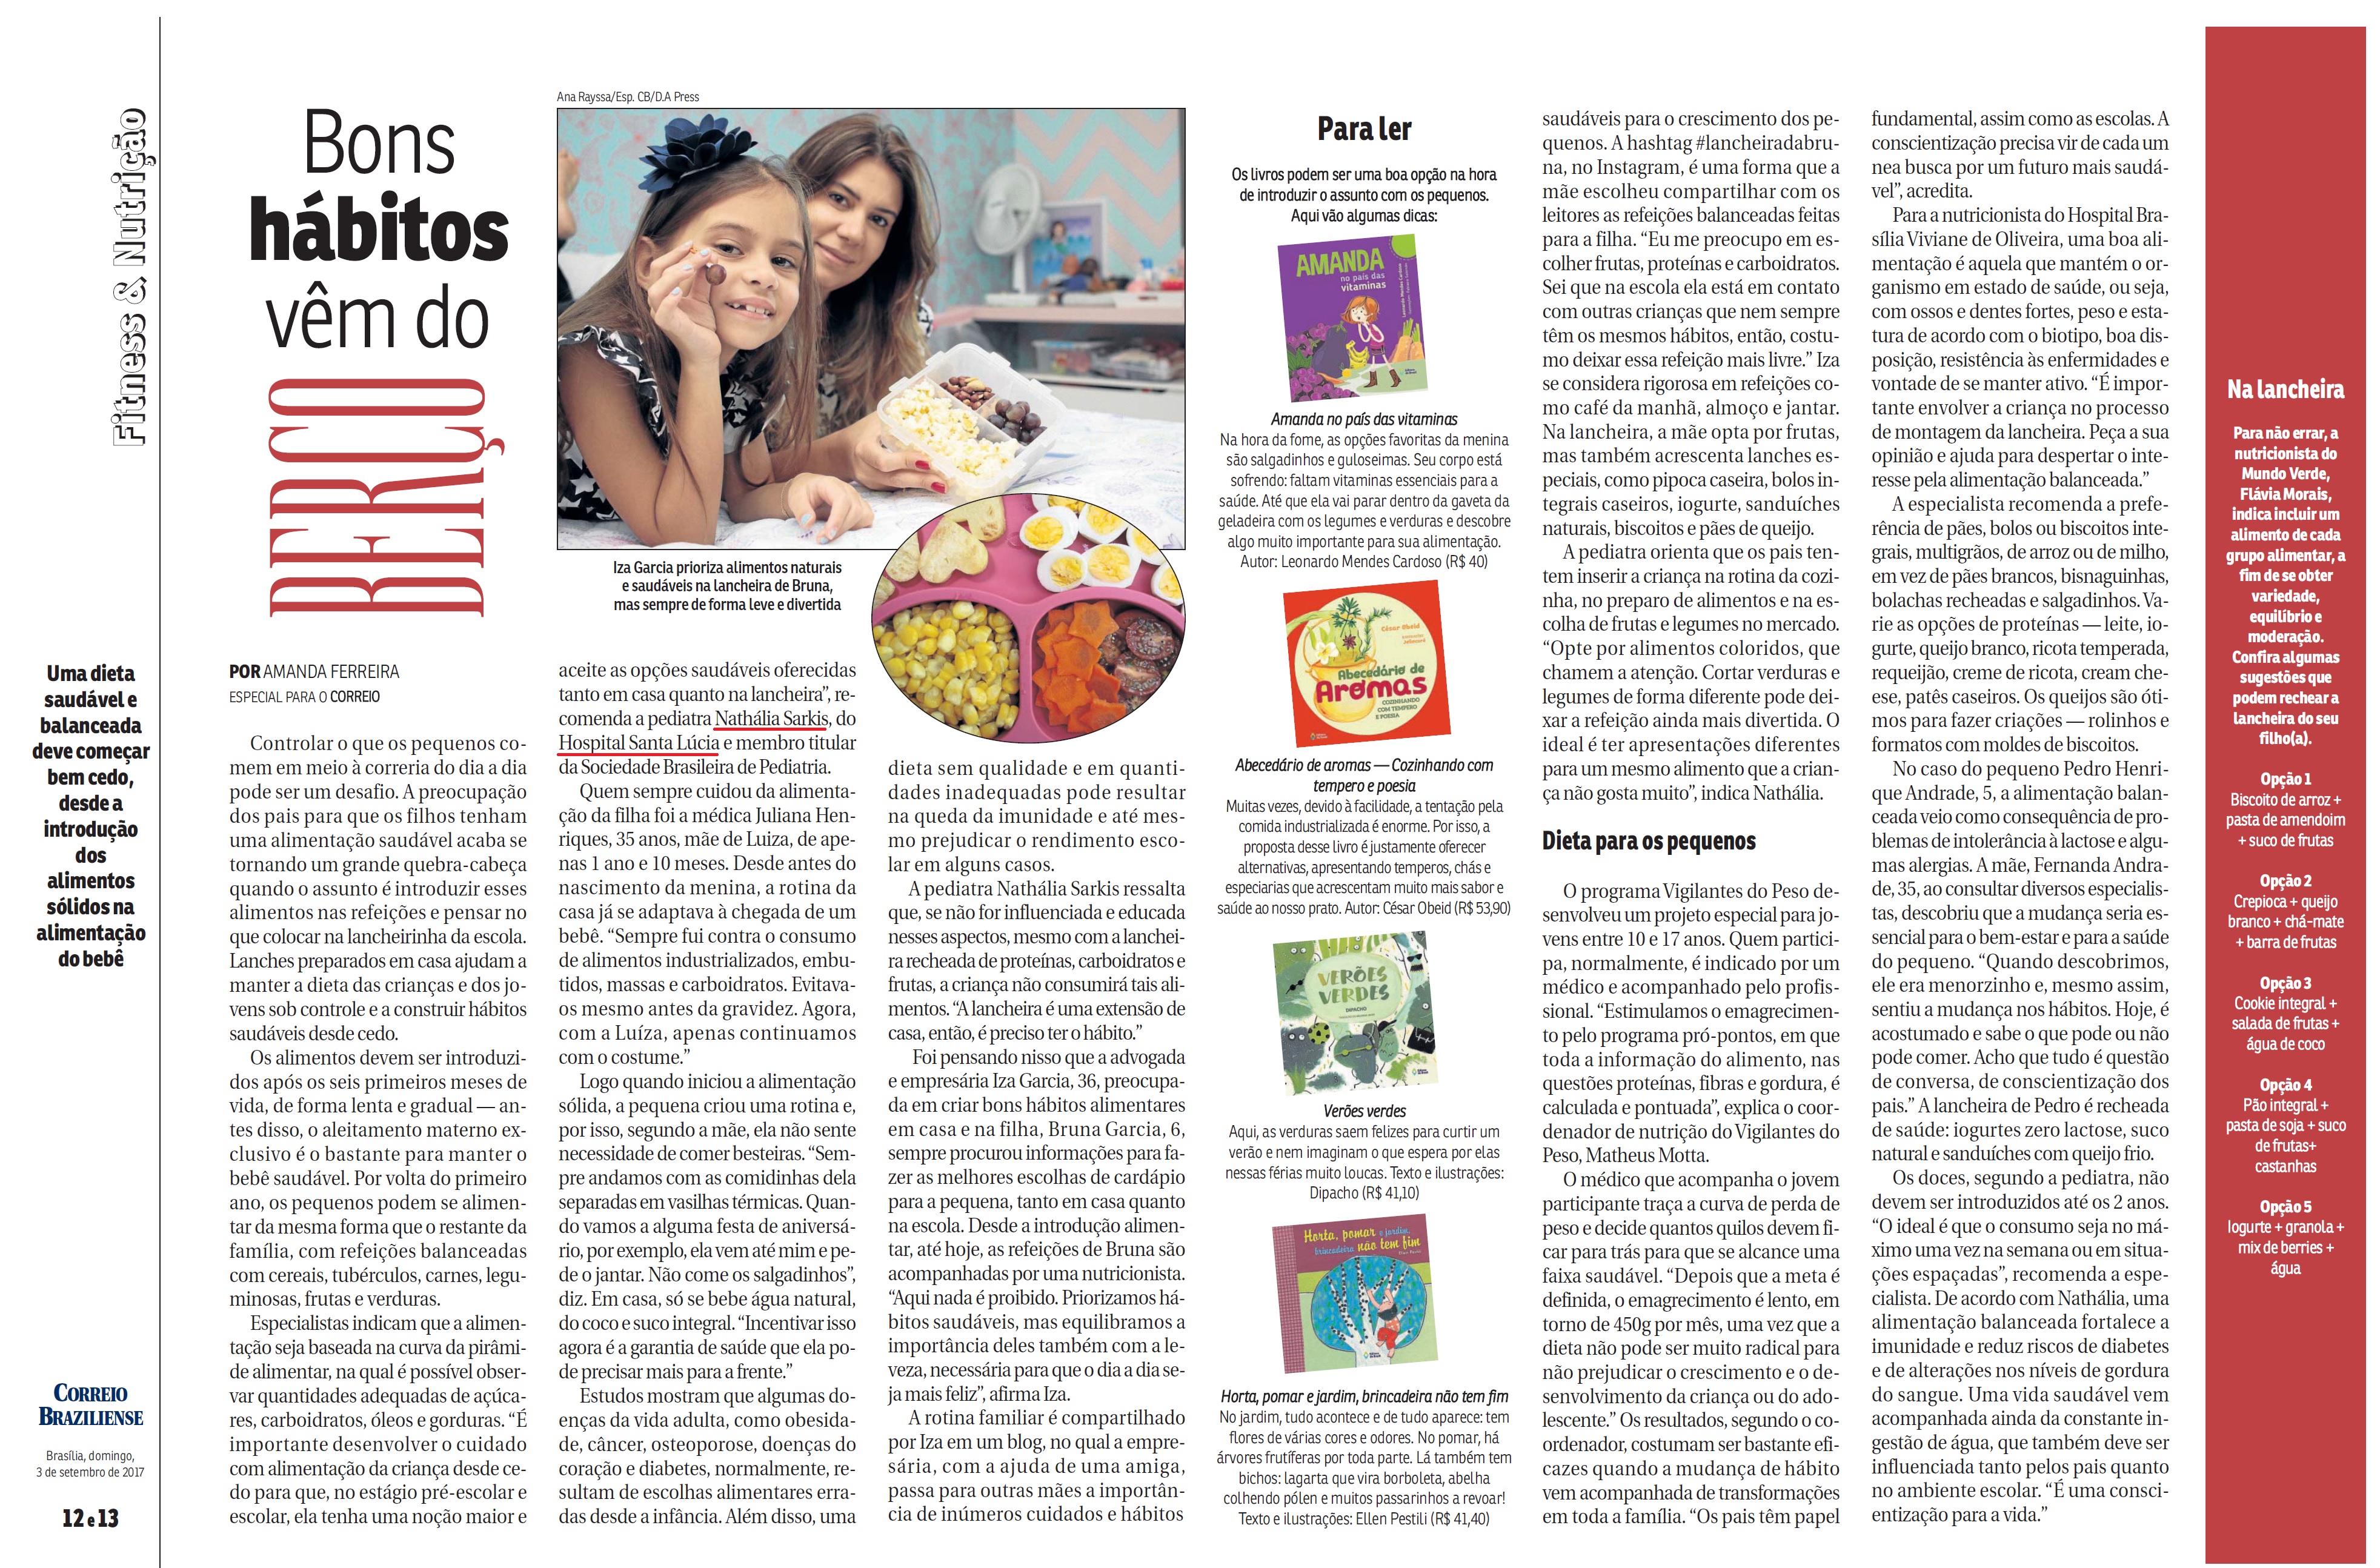 Revista do Correio - Dra. Nathália Sarkis HSL - 03-09-2017